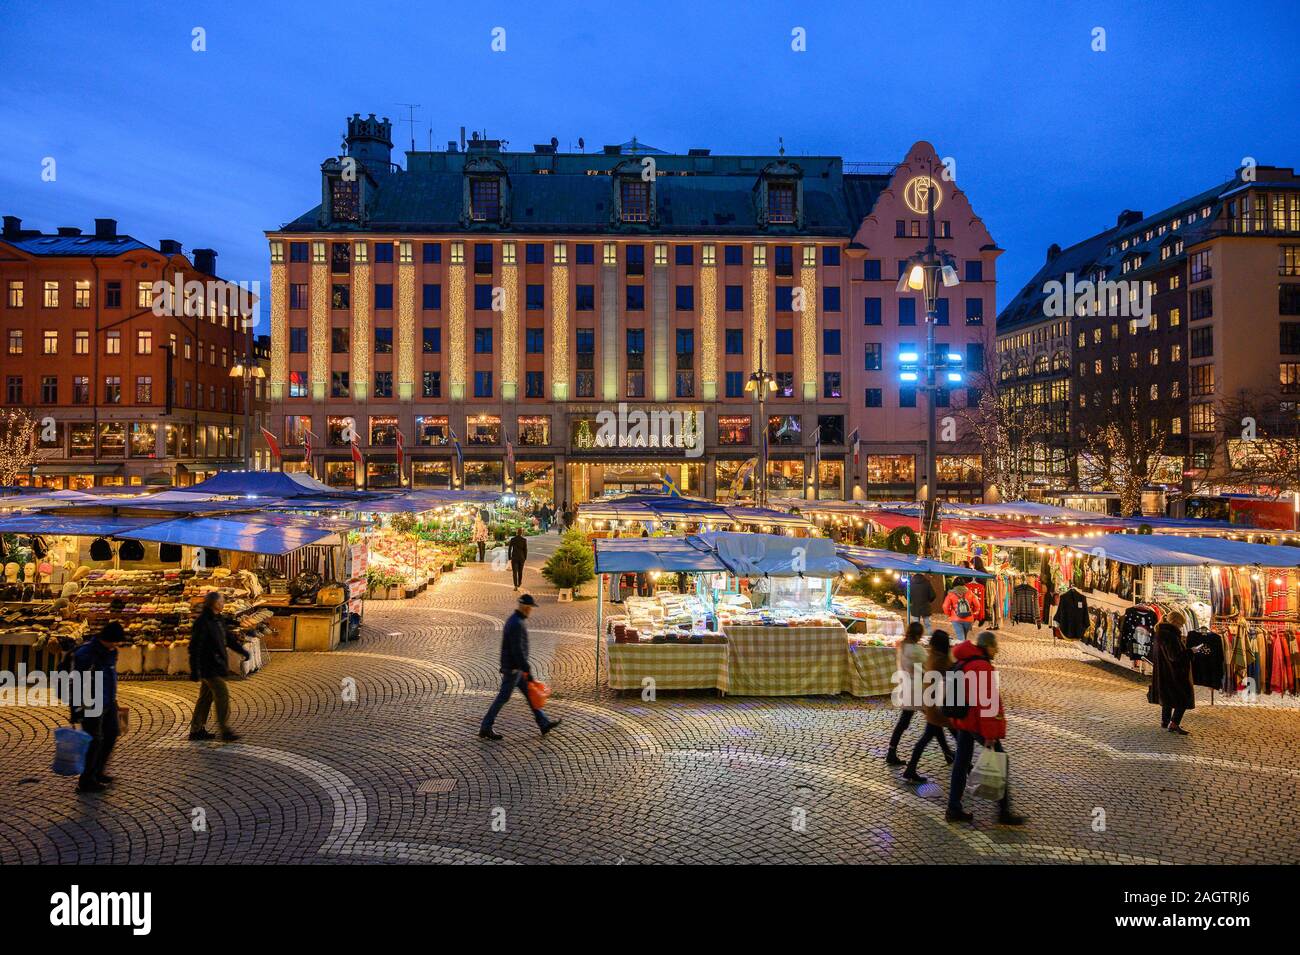 La Suède, Stockholm, le 18 décembre 2019 : ambiance de Noël de la ville. Les étals du marché de fleurs, de fruits, de légumes et de souvenirs à la sq Hotorget Banque D'Images